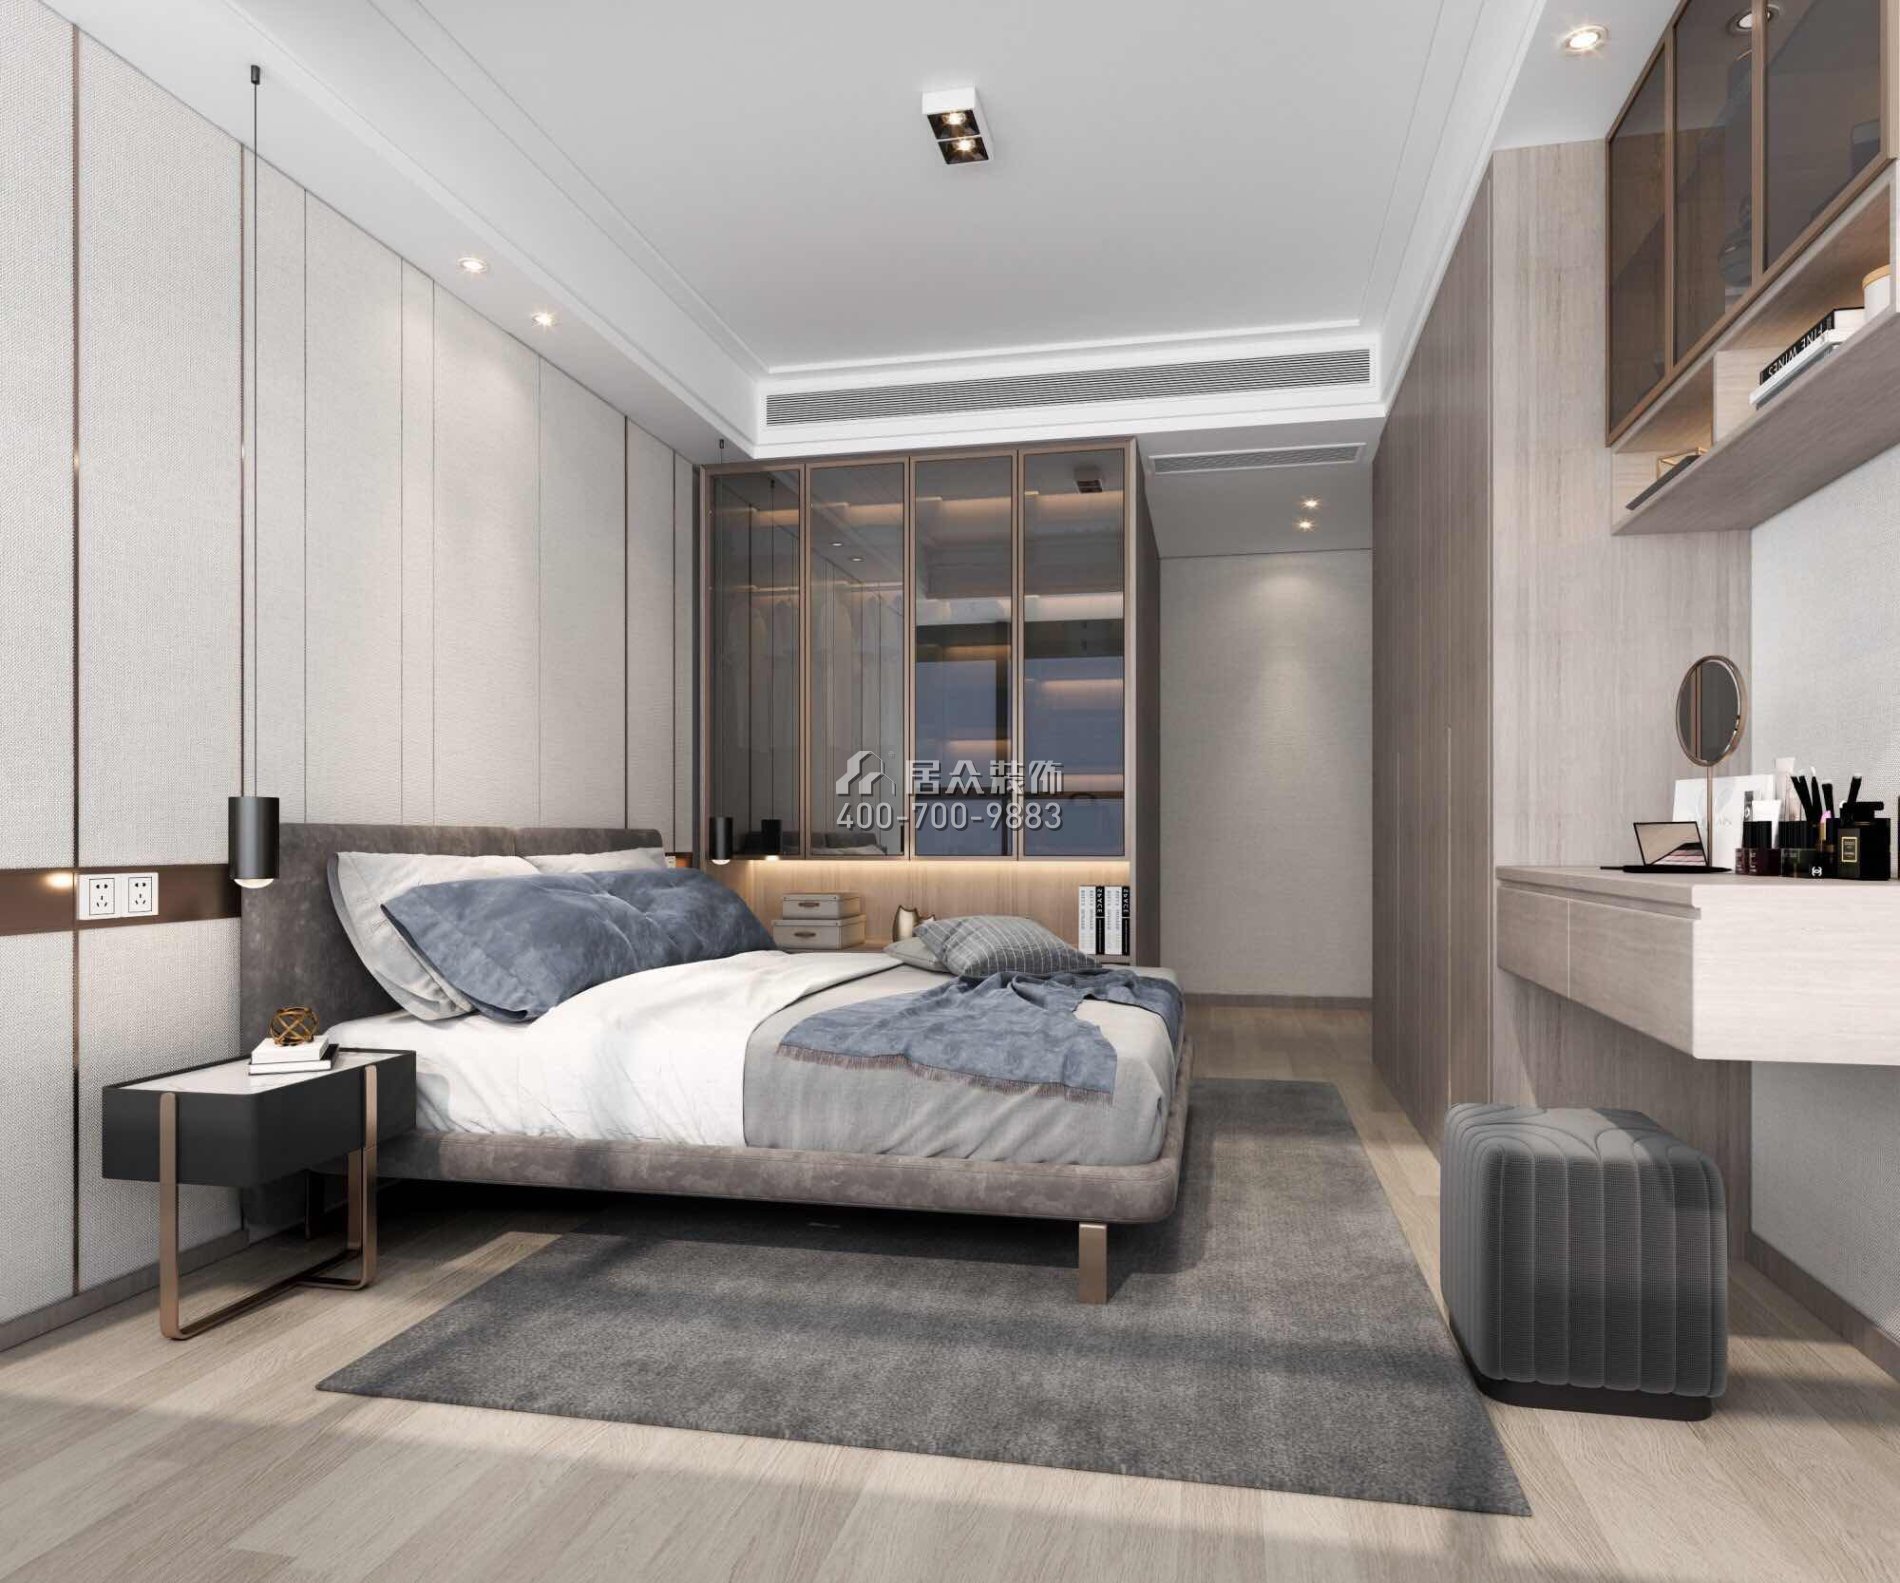 天鹅堡三期122平方米现代简约风格平层户型卧室装修效果图